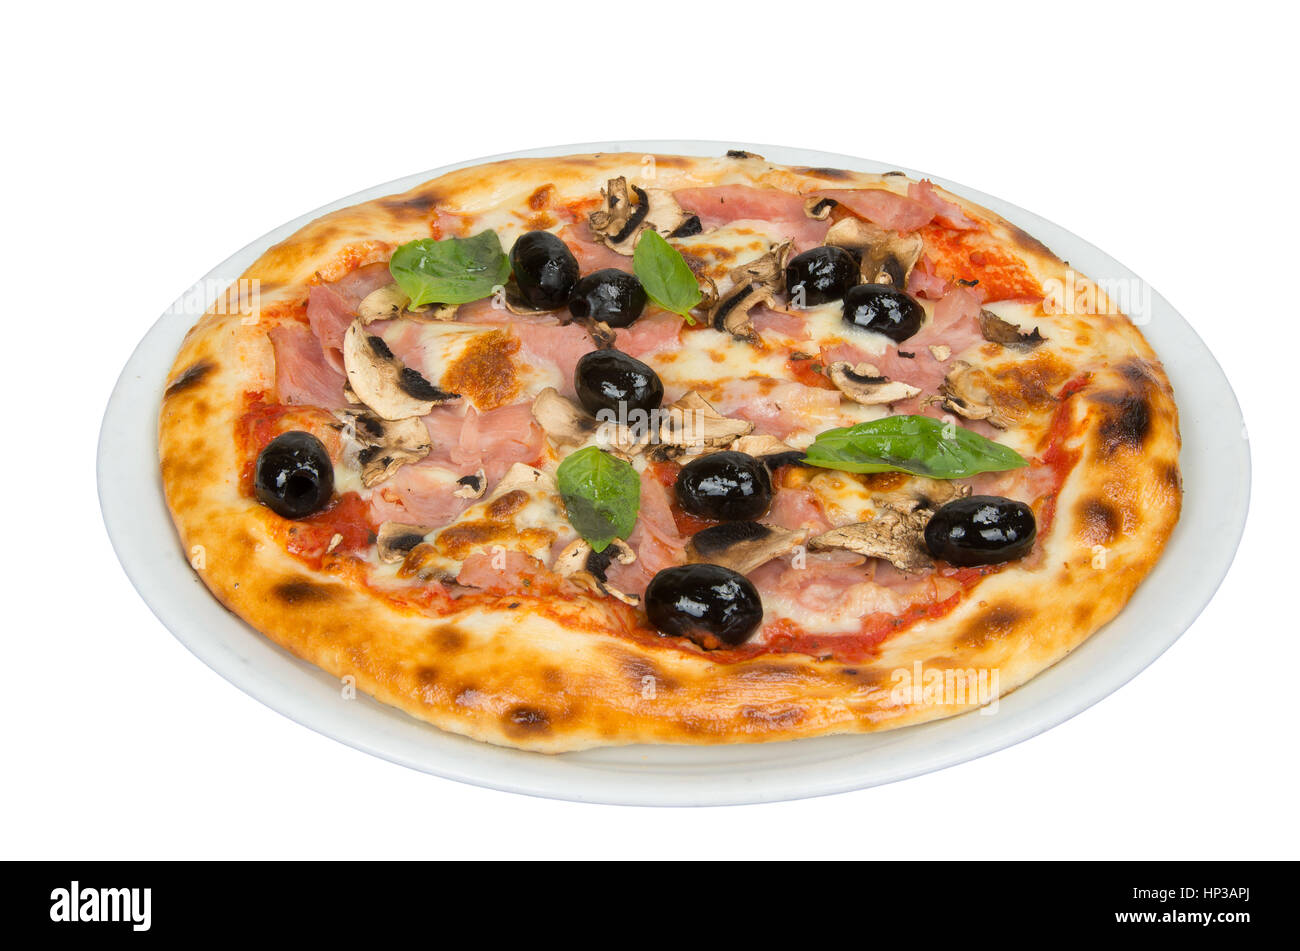 La pizza sur un fond blanc avec sauce tomate, bacon, champignons et olives. Banque D'Images